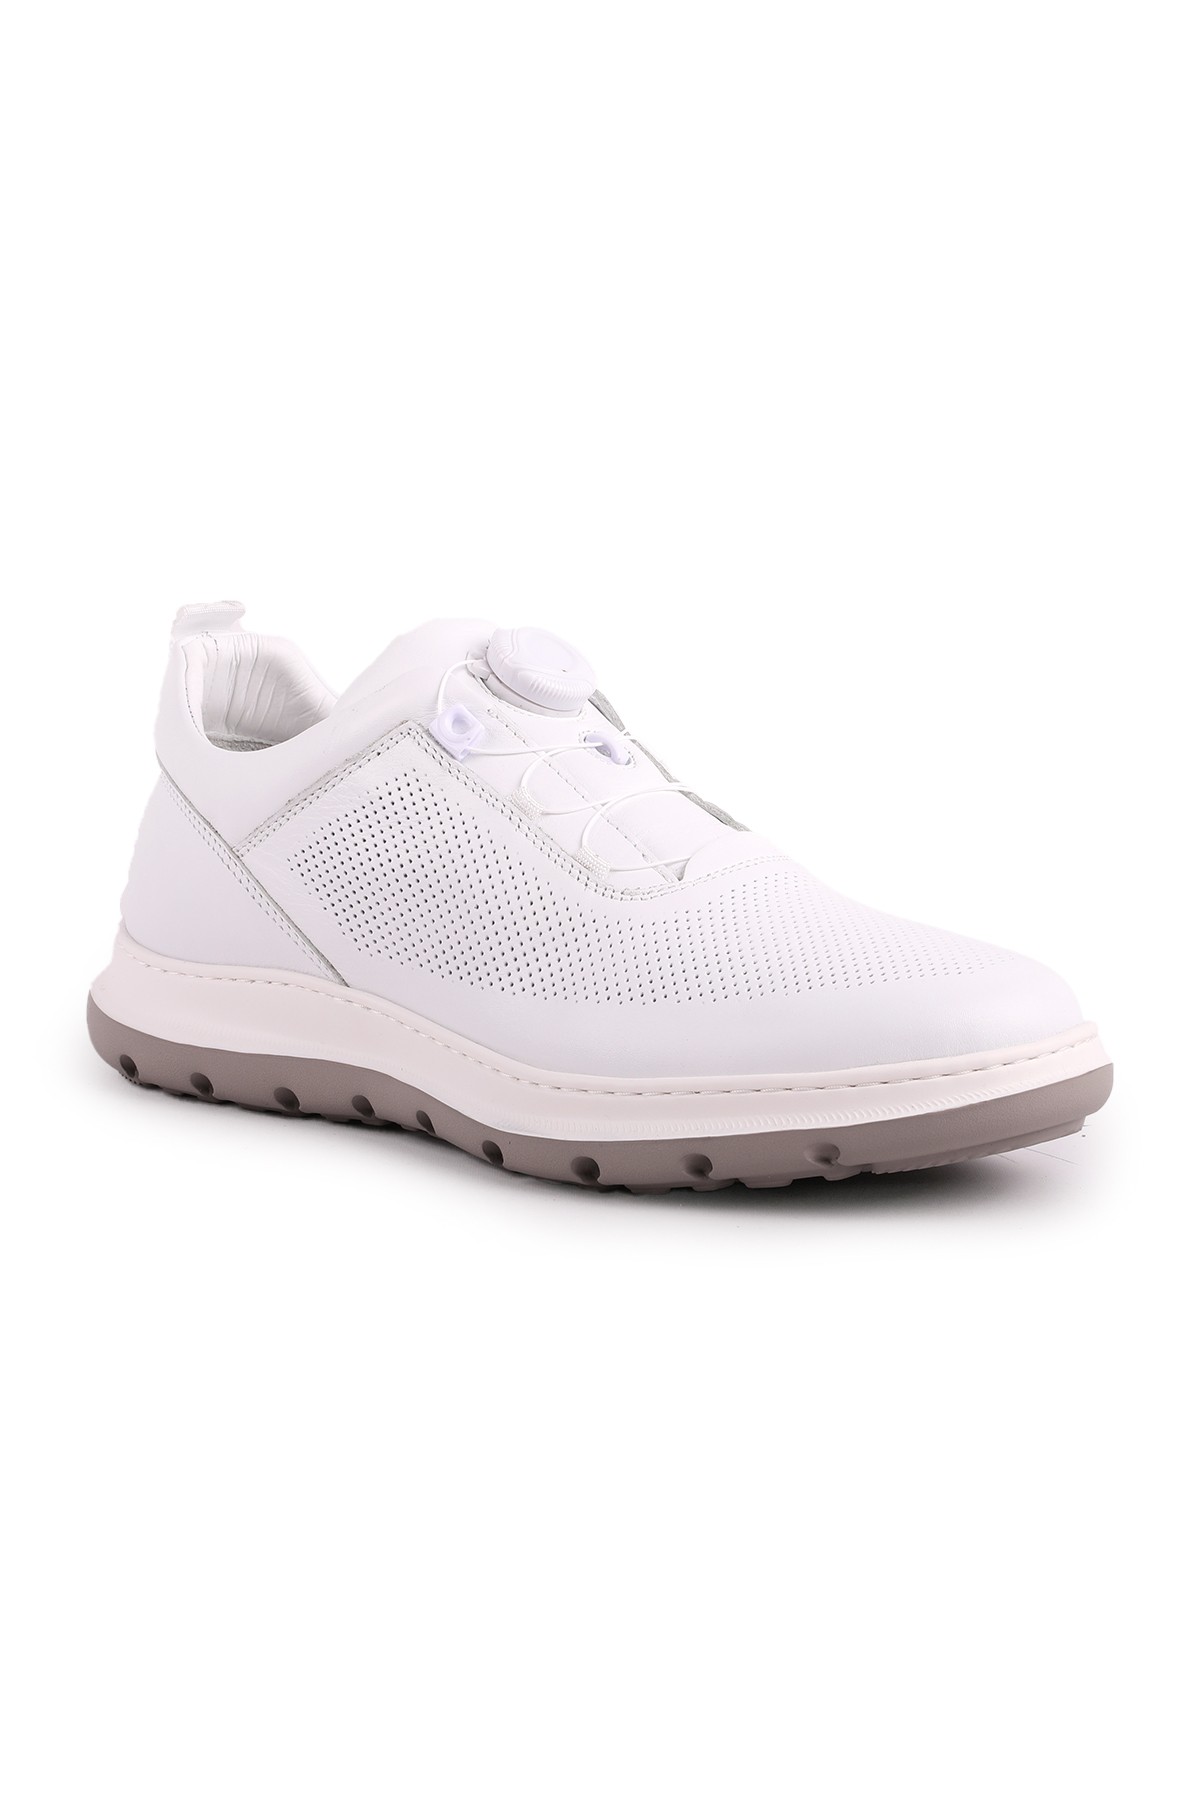 Libero L5228 Erkek Deri Casual Ayakkabı BEYAZ - Beyaz